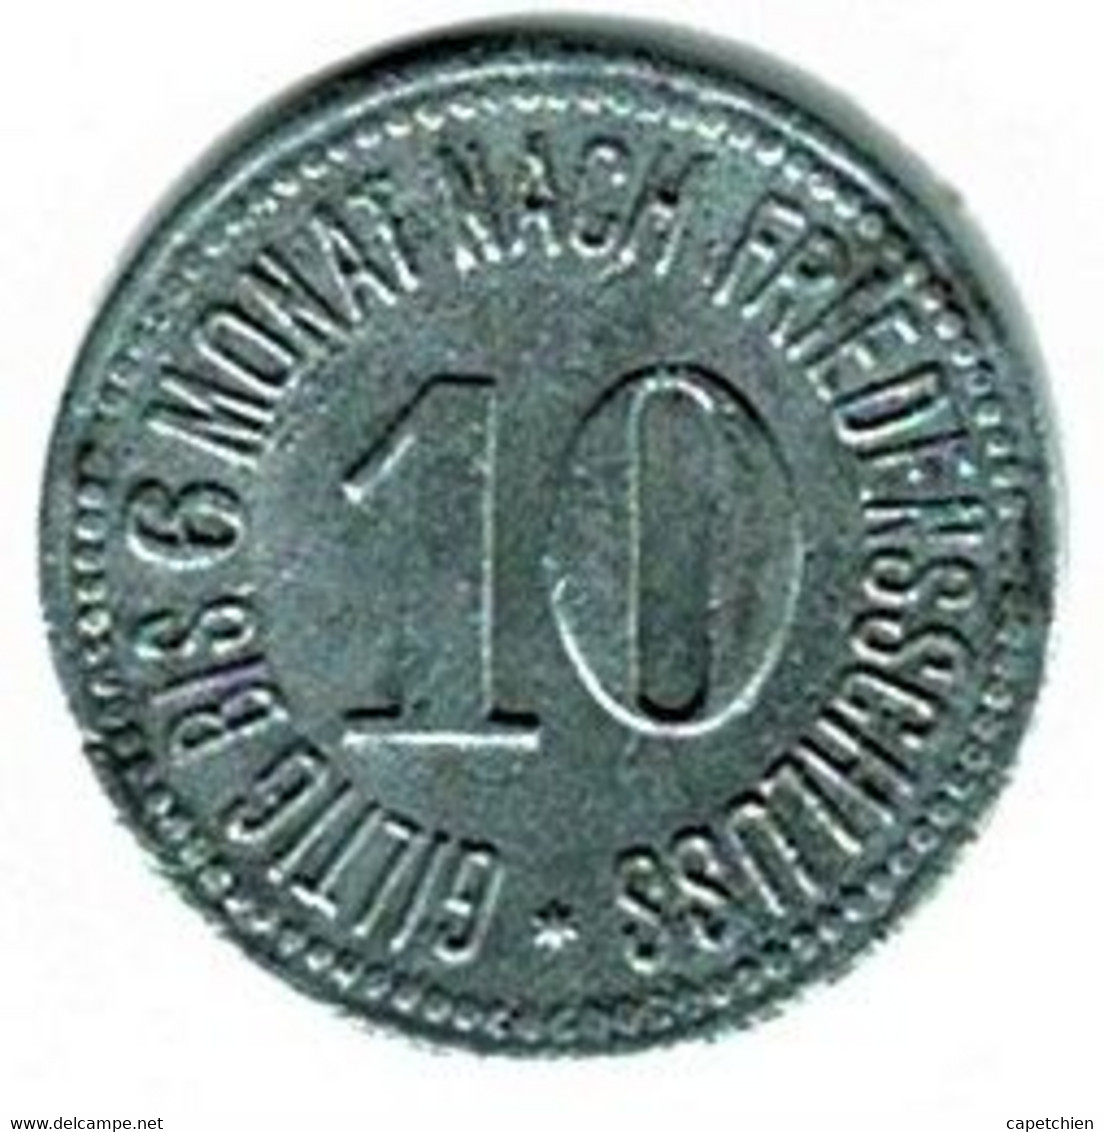 ALLEMAGNE / NECESSITE /  BEZIRKSAMT WASSERBURG / 10 PF./ 1917  / ZINC / 20 Mm / ETAT TTB / 578.2 - Monetary/Of Necessity